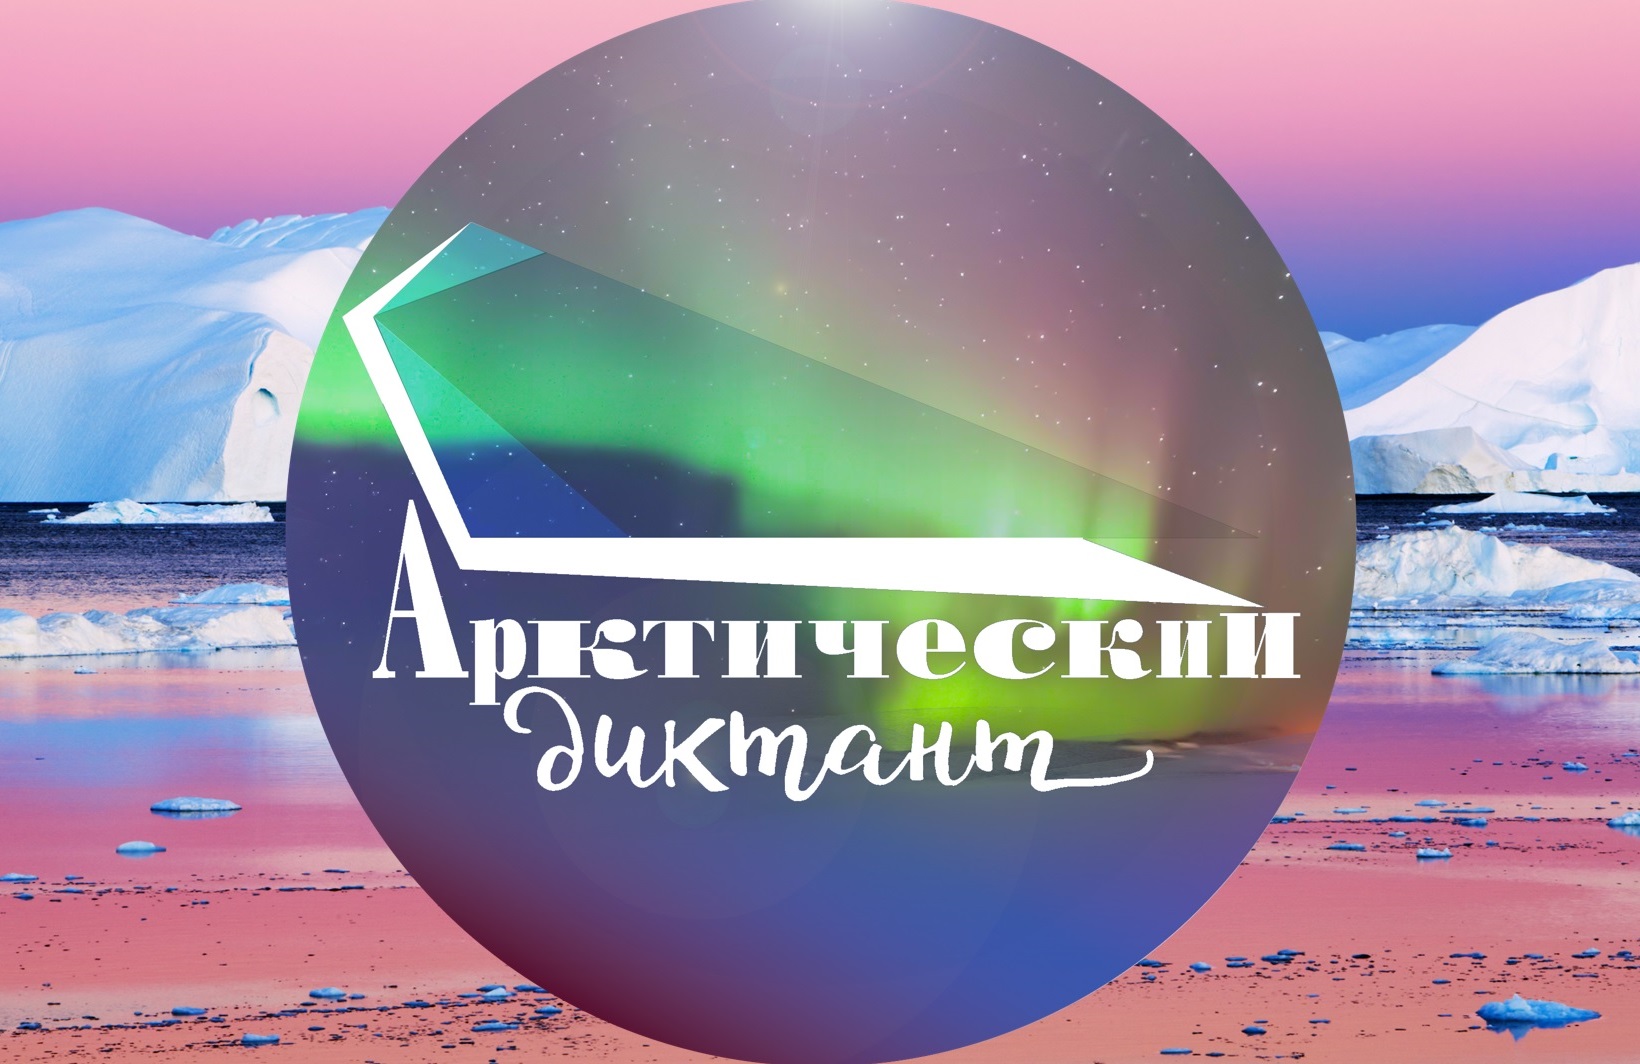 Кузбасские школьники смогут показать свои знания на Всероссийском Арктическом онлайн-диктанте 